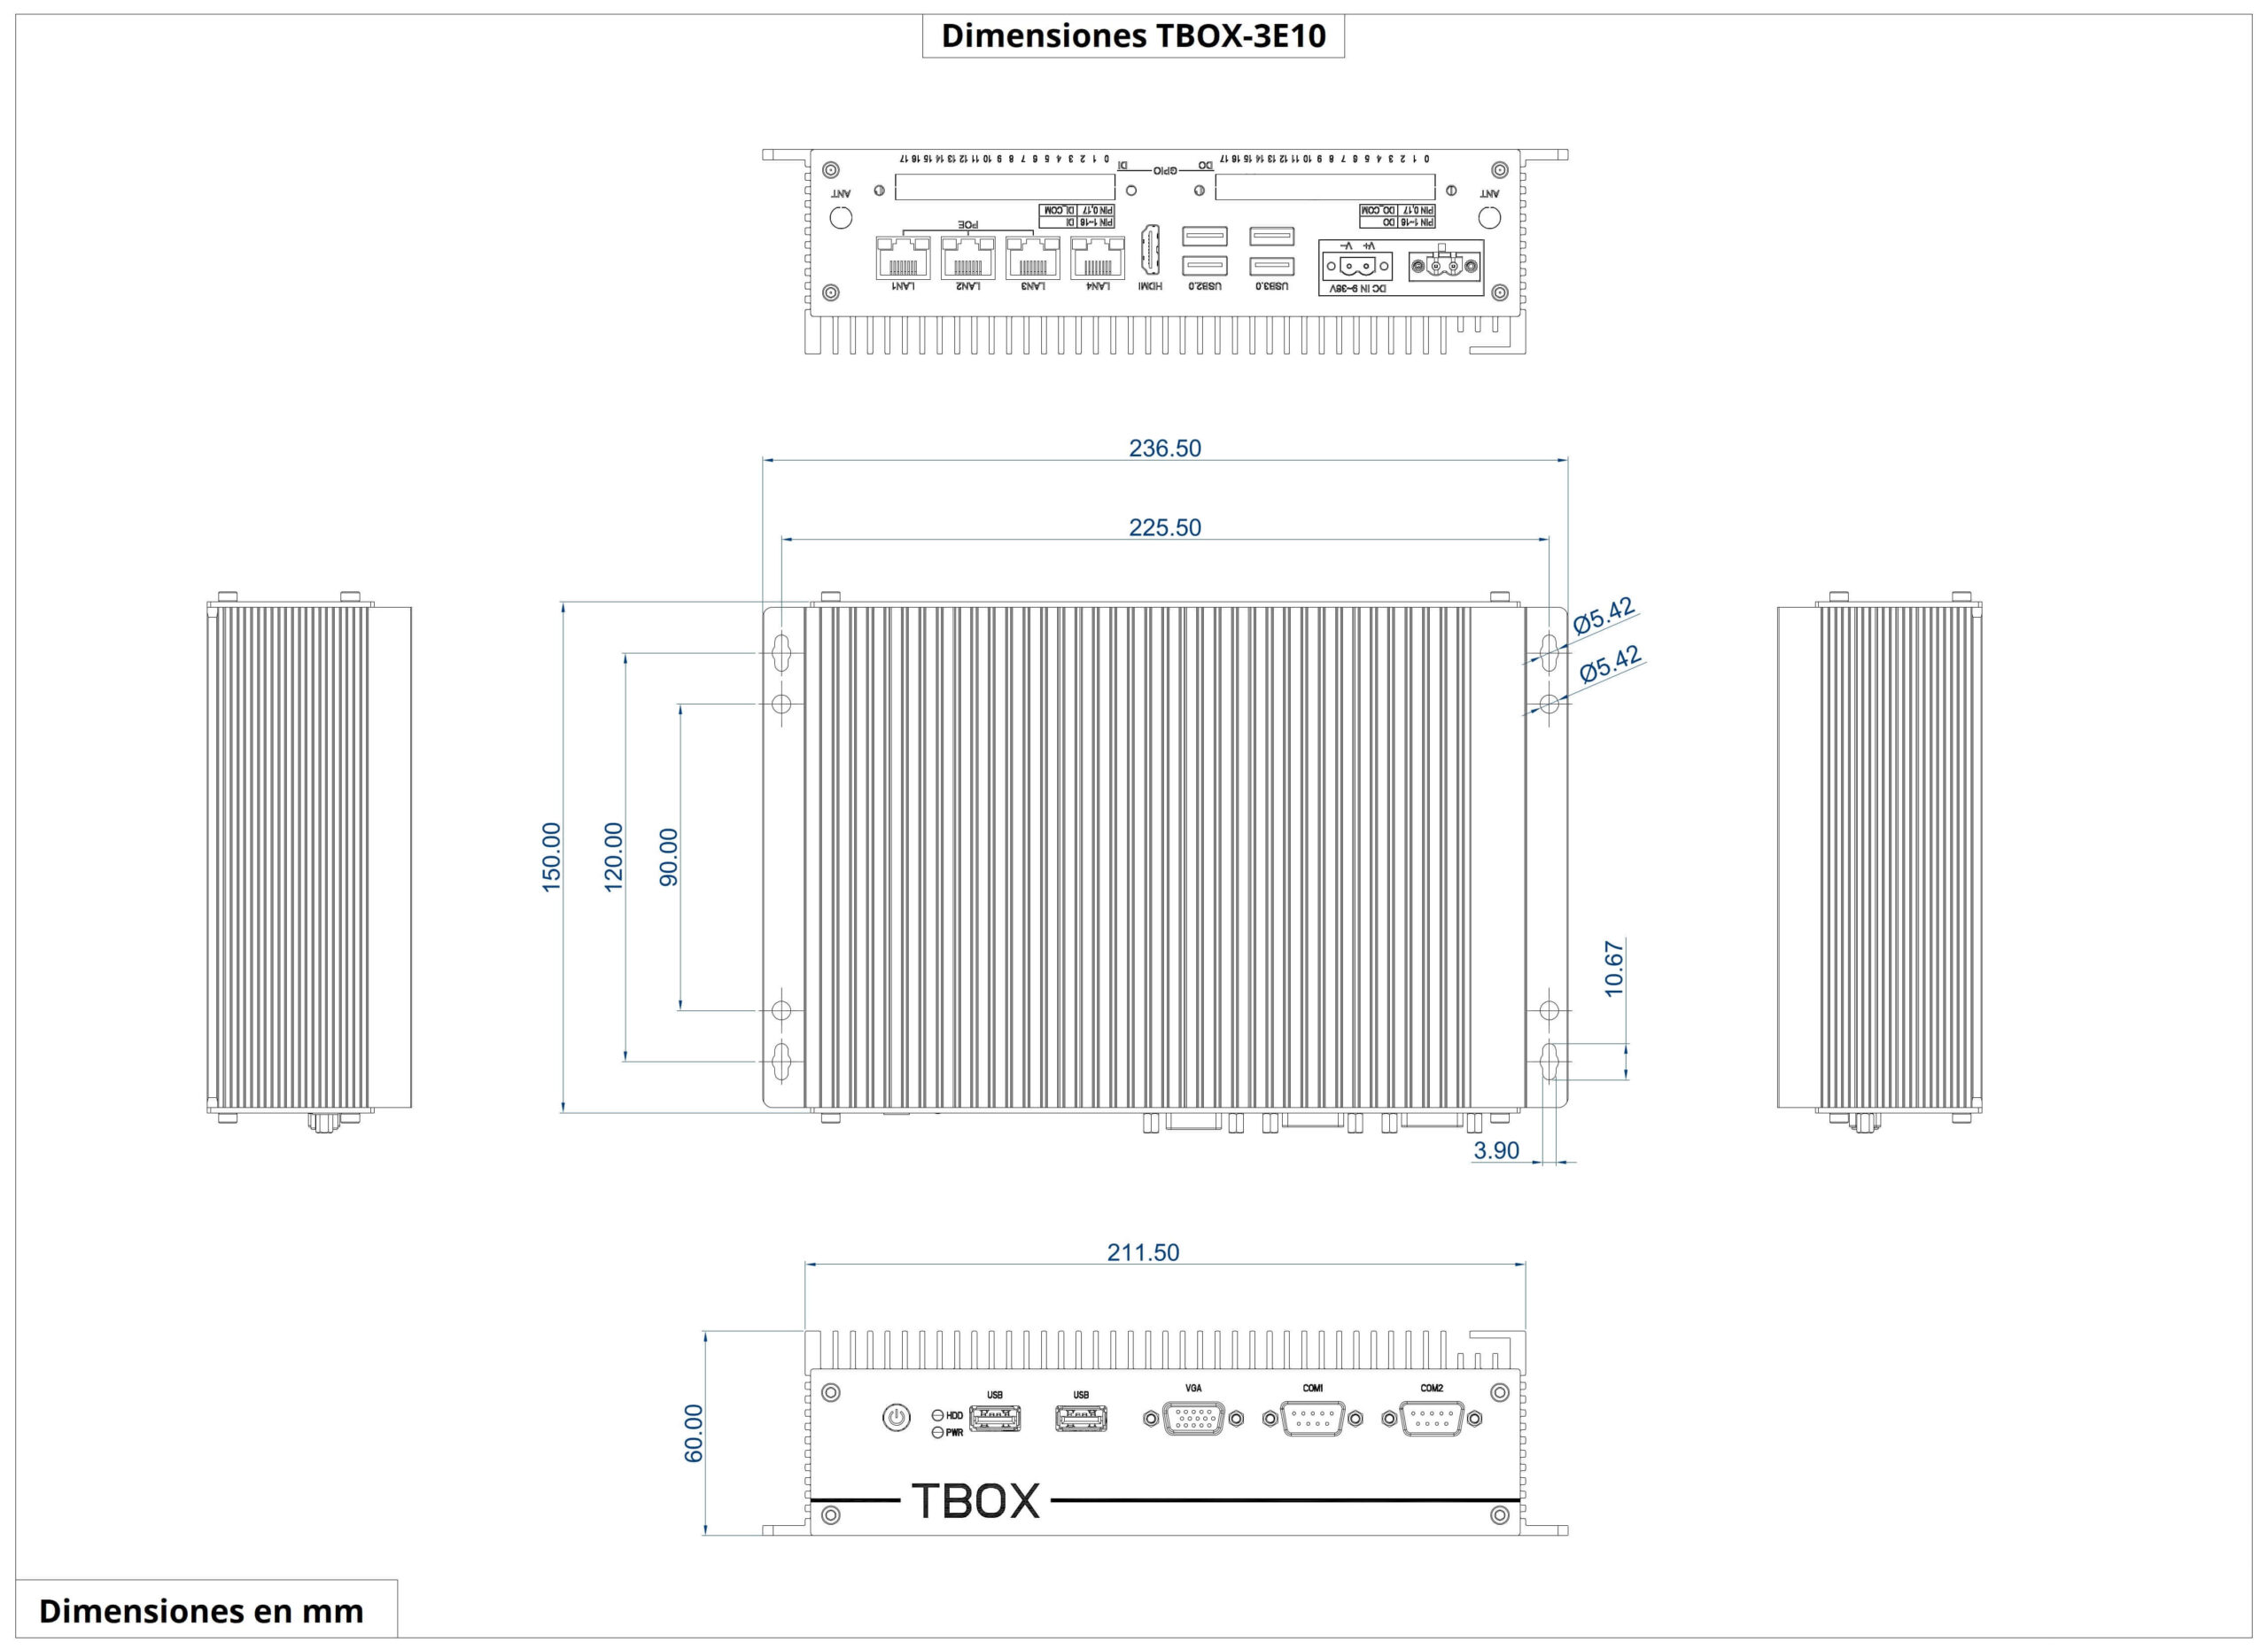 Dimensiones del producto TBOX-3e10